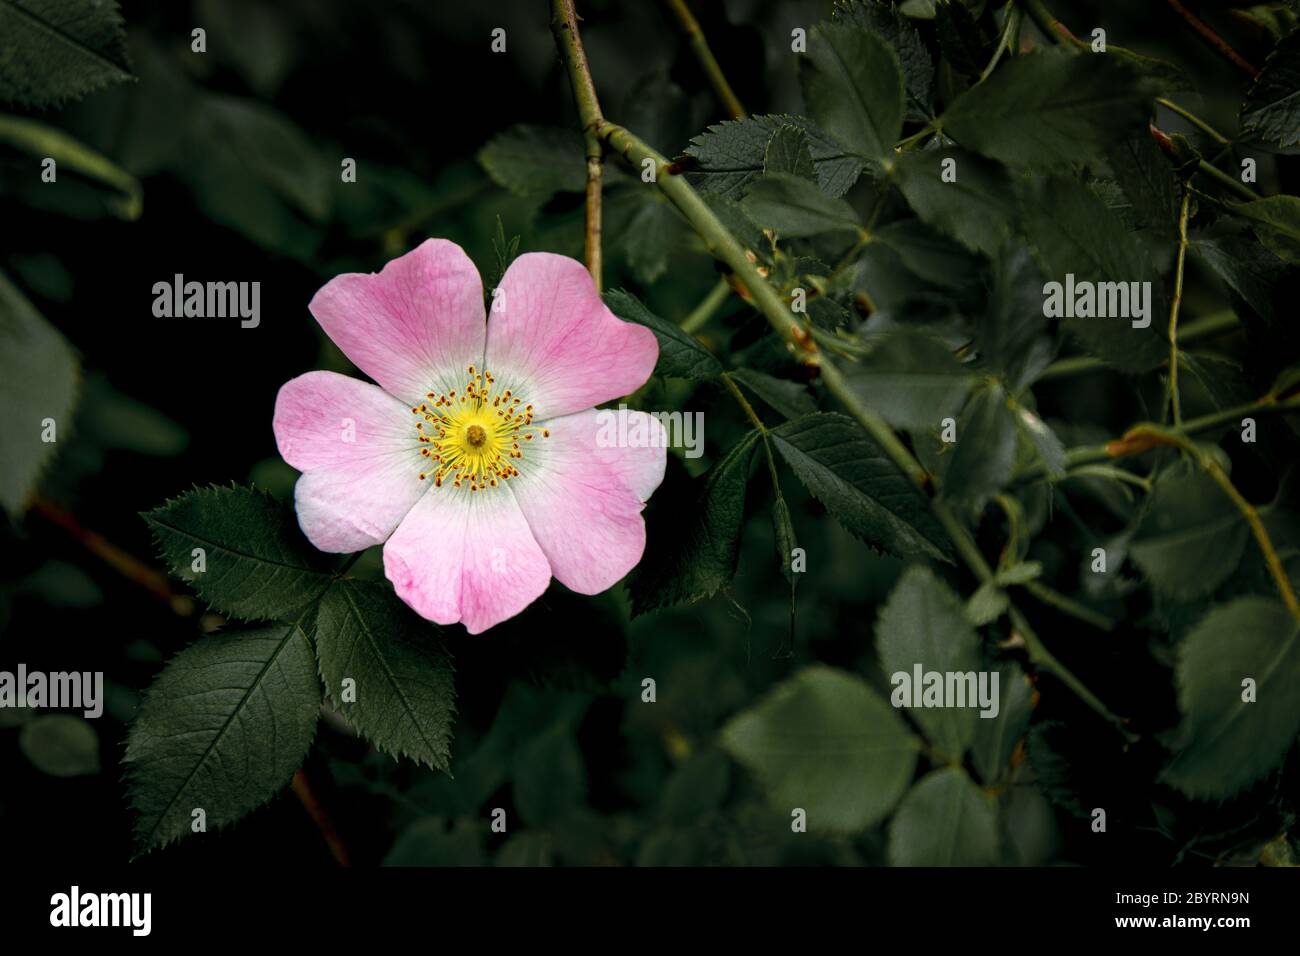 Fiore di rosa selvaggio su sfondo scuro desaturato di foglie Foto Stock